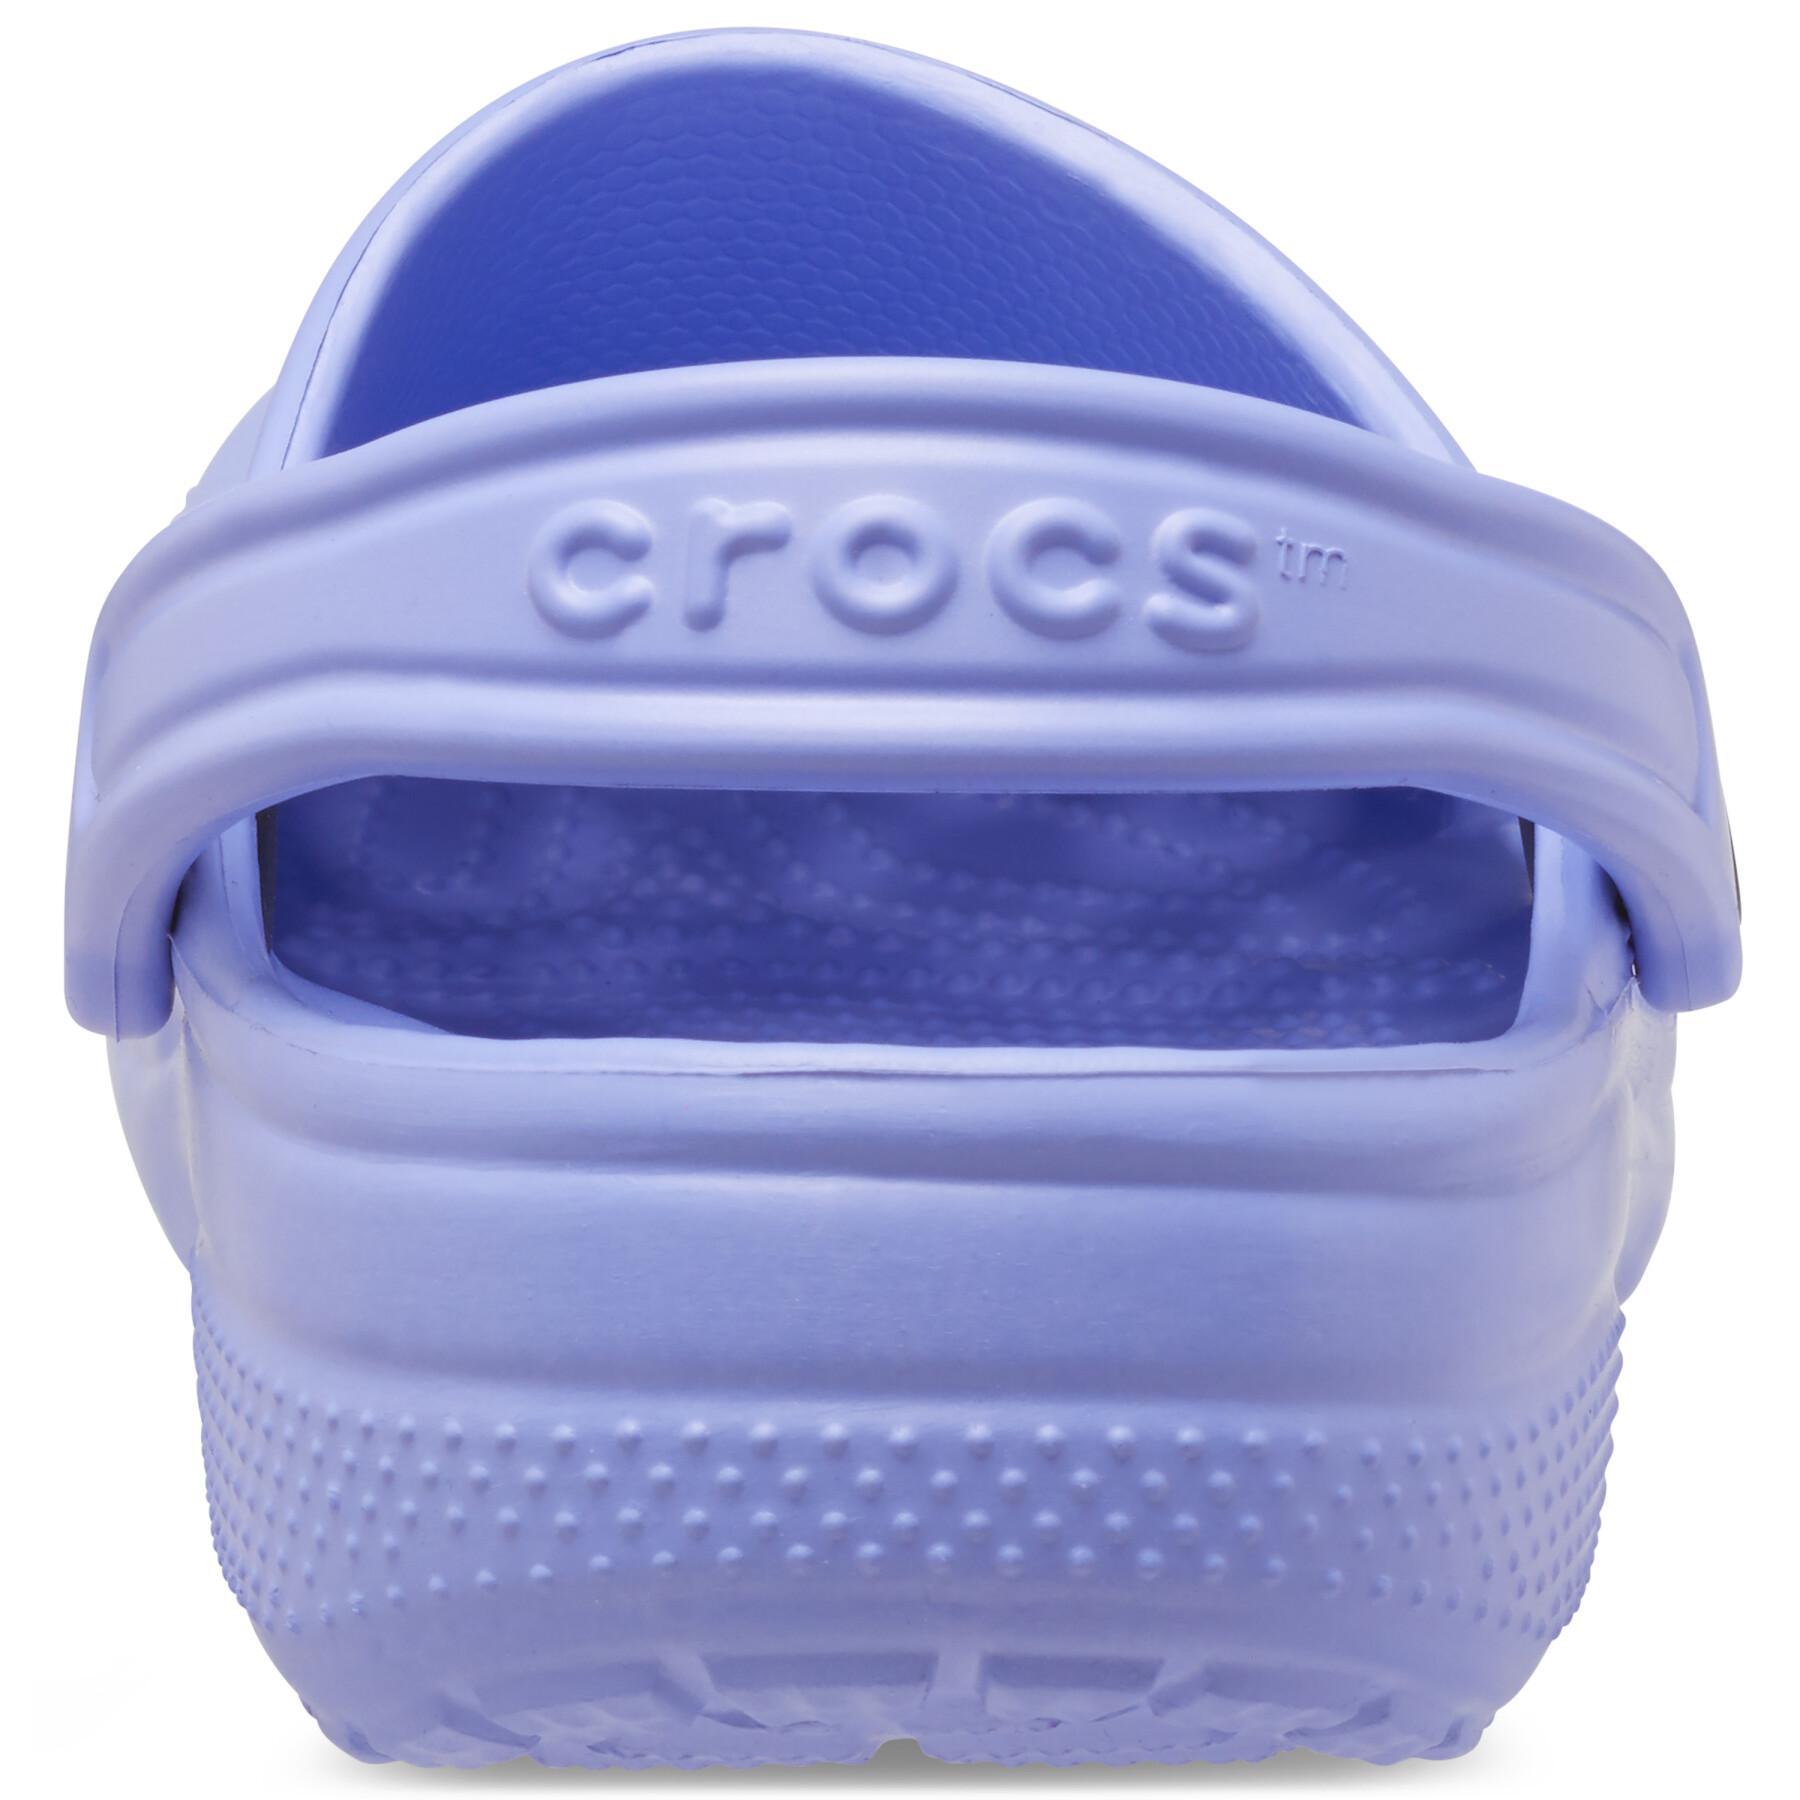 Zoccolo classico Crocs